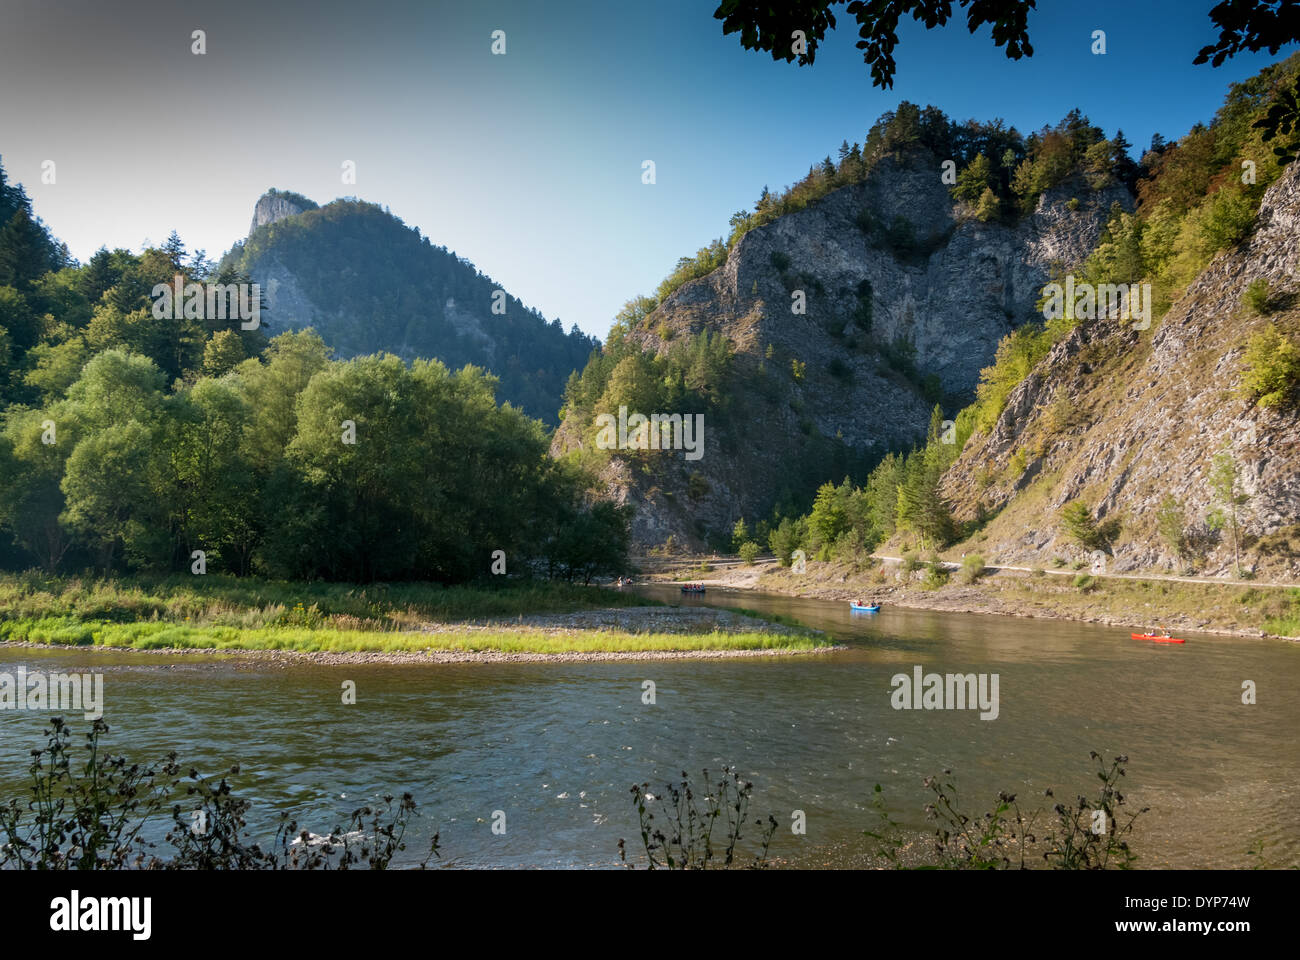 Gorges de la rivière Dunajec en parc national Pieninski, Pologne Banque D'Images